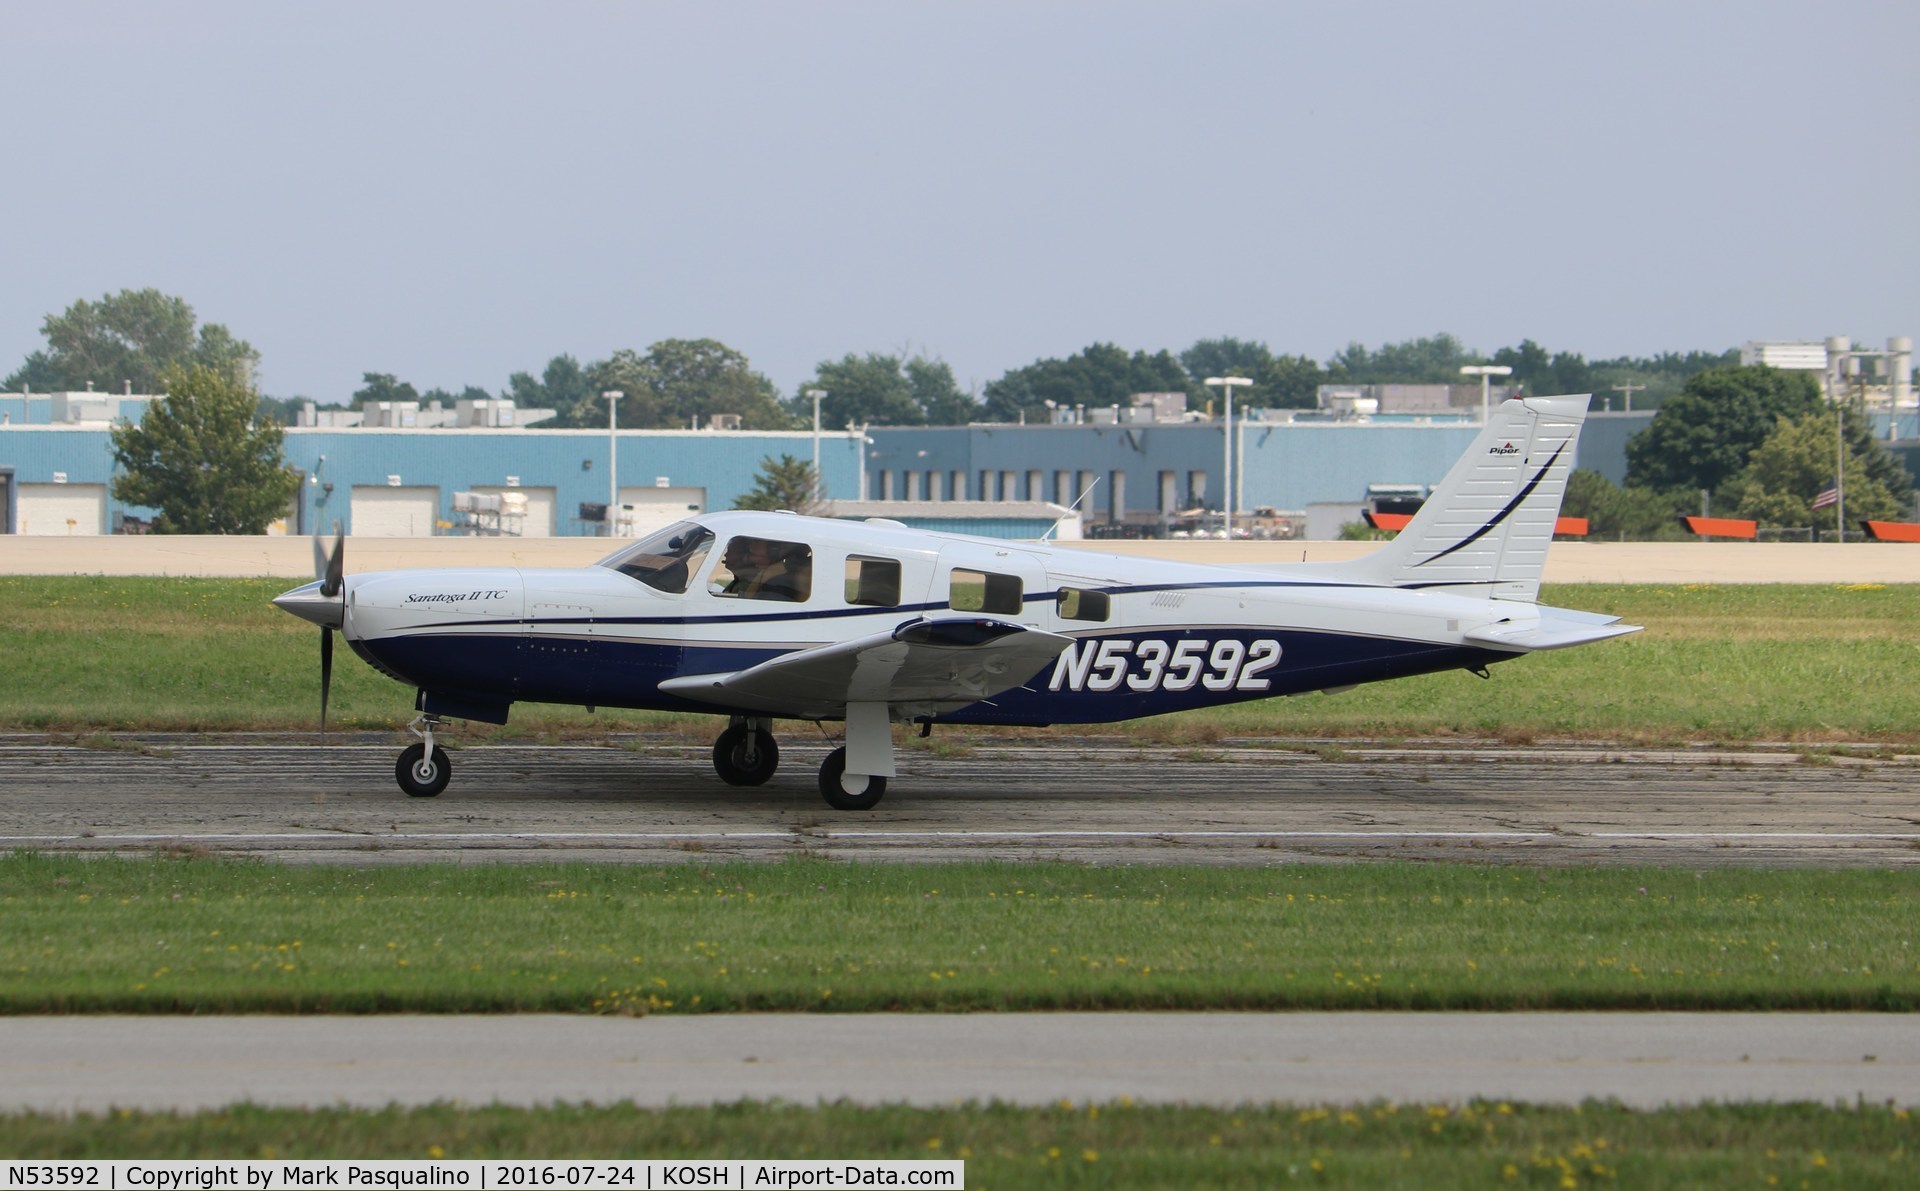 N53592, 2003 Piper PA-32R-301T Turbo Saratoga C/N 3257317, Piper PA-32R-301T